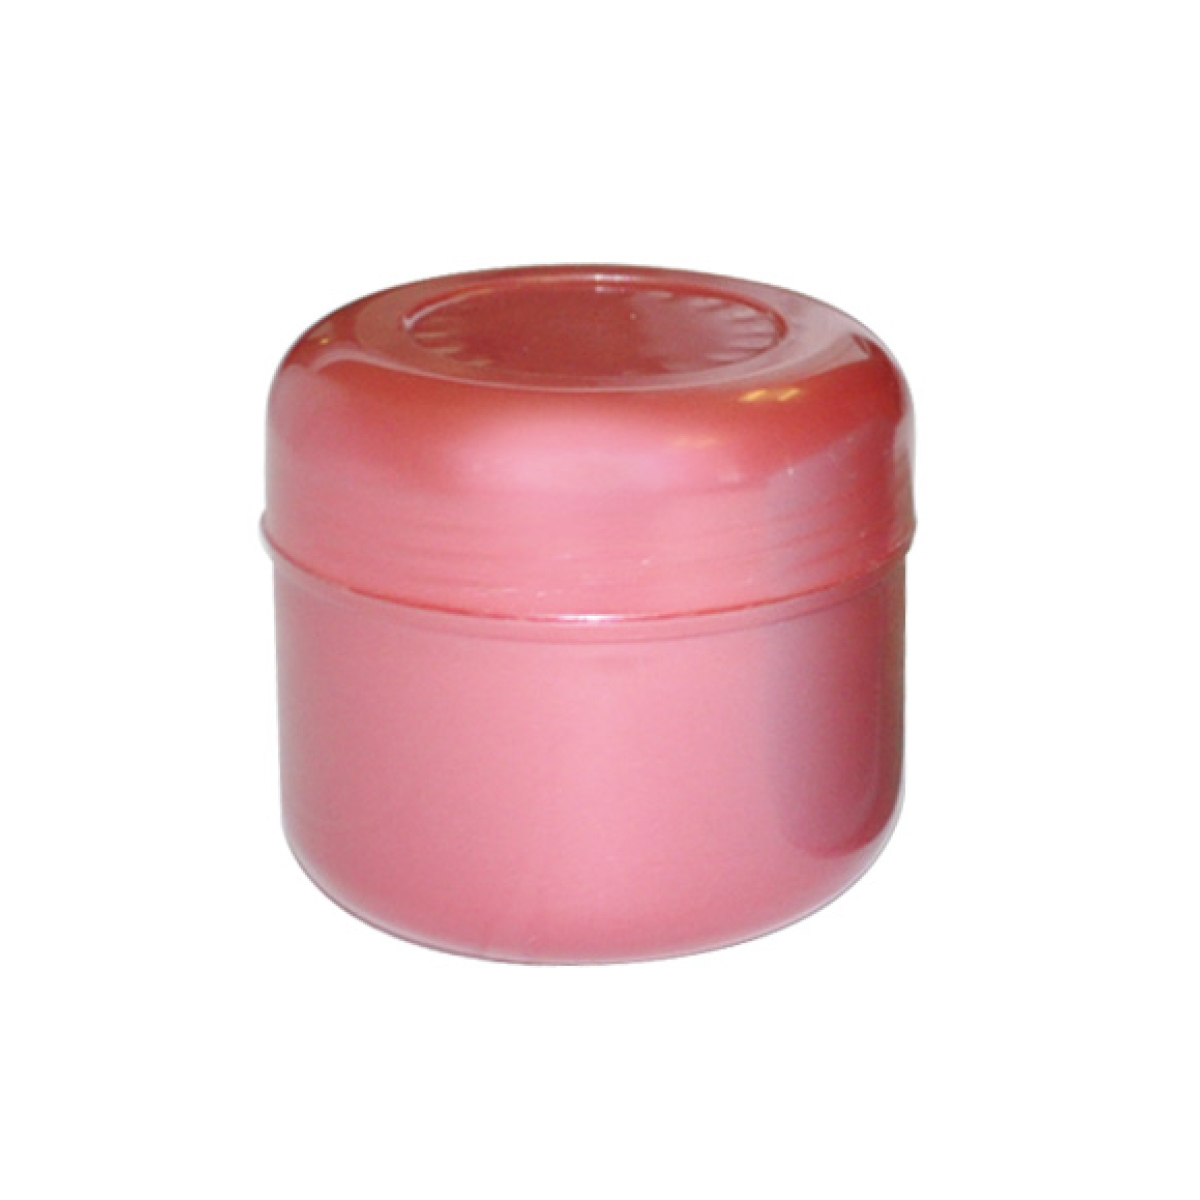 Kozmetikai tégely propilén többféle színben 30 ml - 1 db